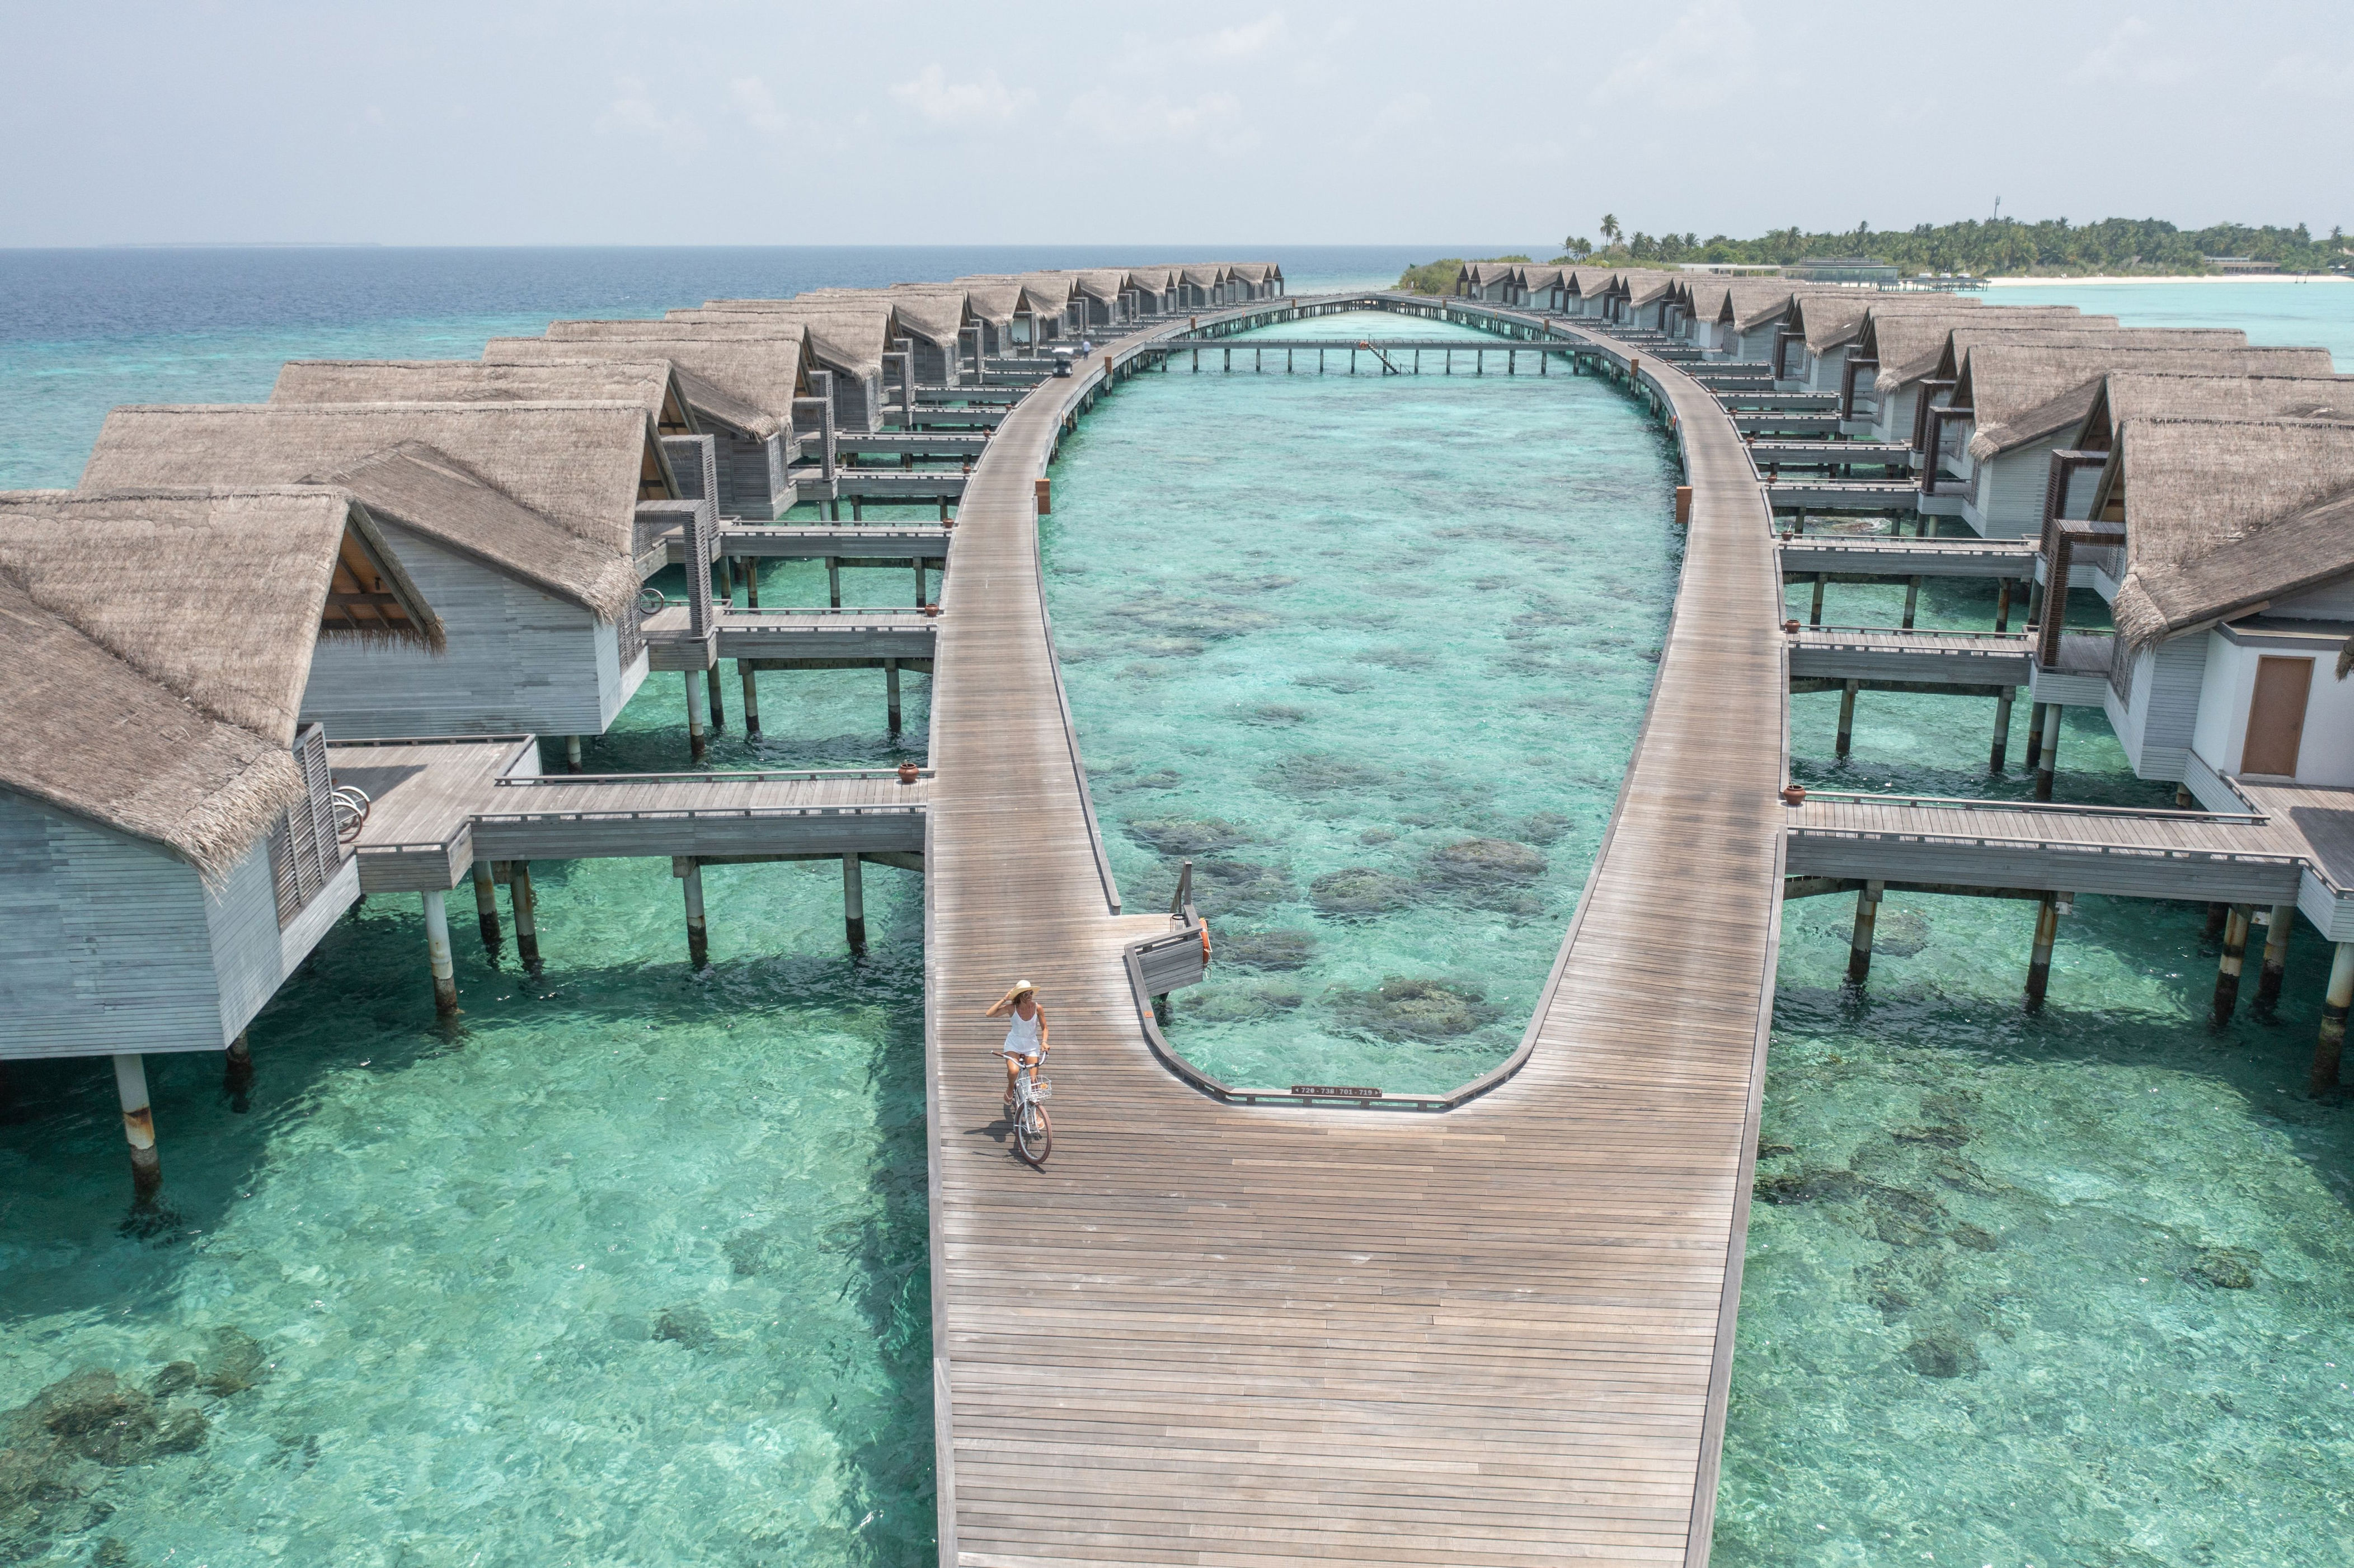 cómo llegar, dónde alojarse y otras cosas que debes saber de maldivas antes de viajar